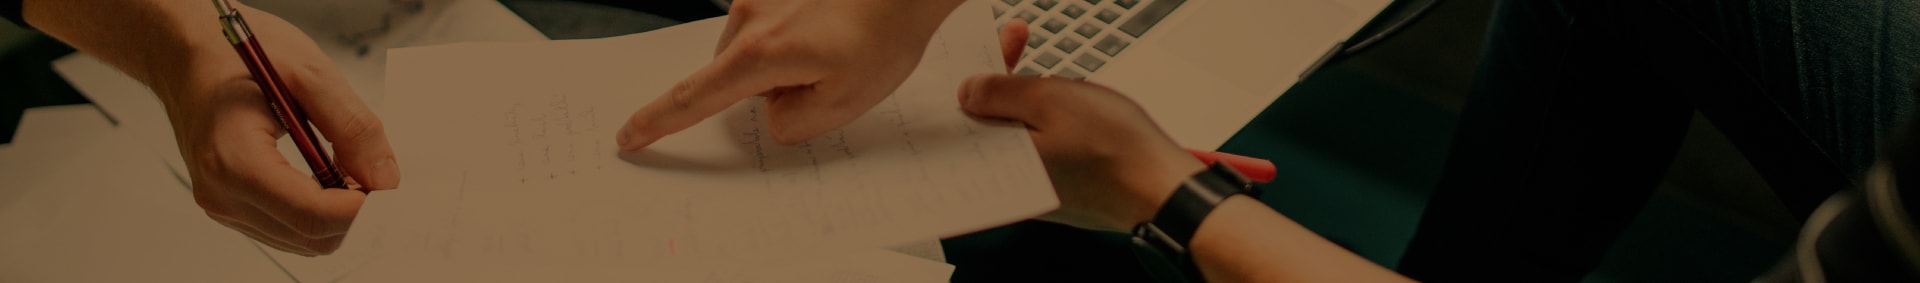 Imagem de duas pessoas analisando dados numa folha de papel